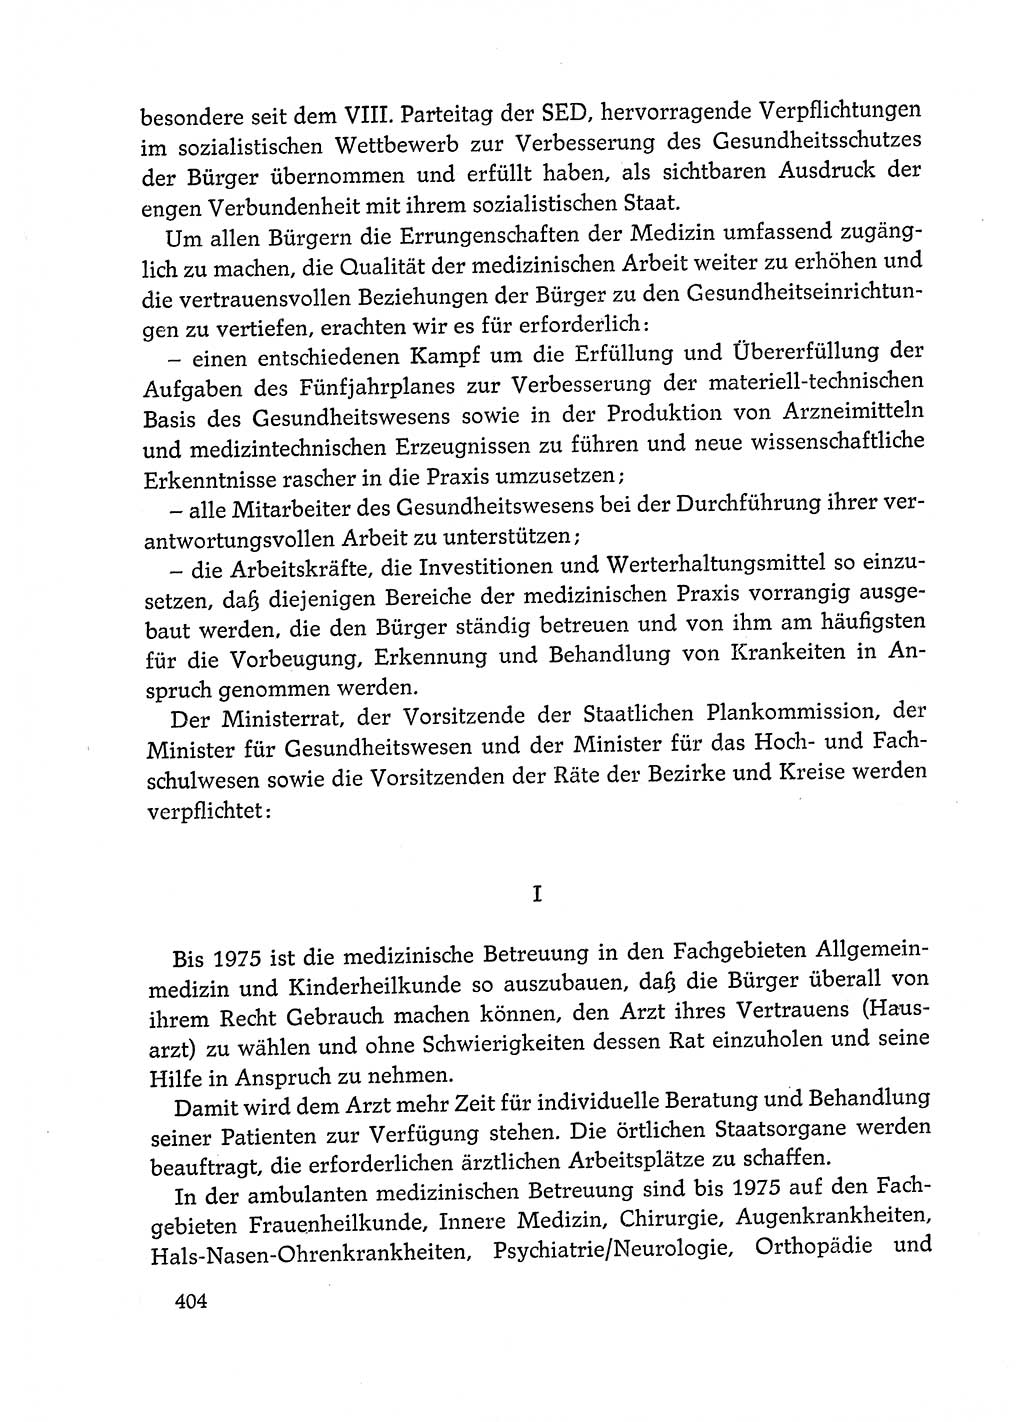 Dokumente der Sozialistischen Einheitspartei Deutschlands (SED) [Deutsche Demokratische Republik (DDR)] 1972-1973, Seite 404 (Dok. SED DDR 1972-1973, S. 404)